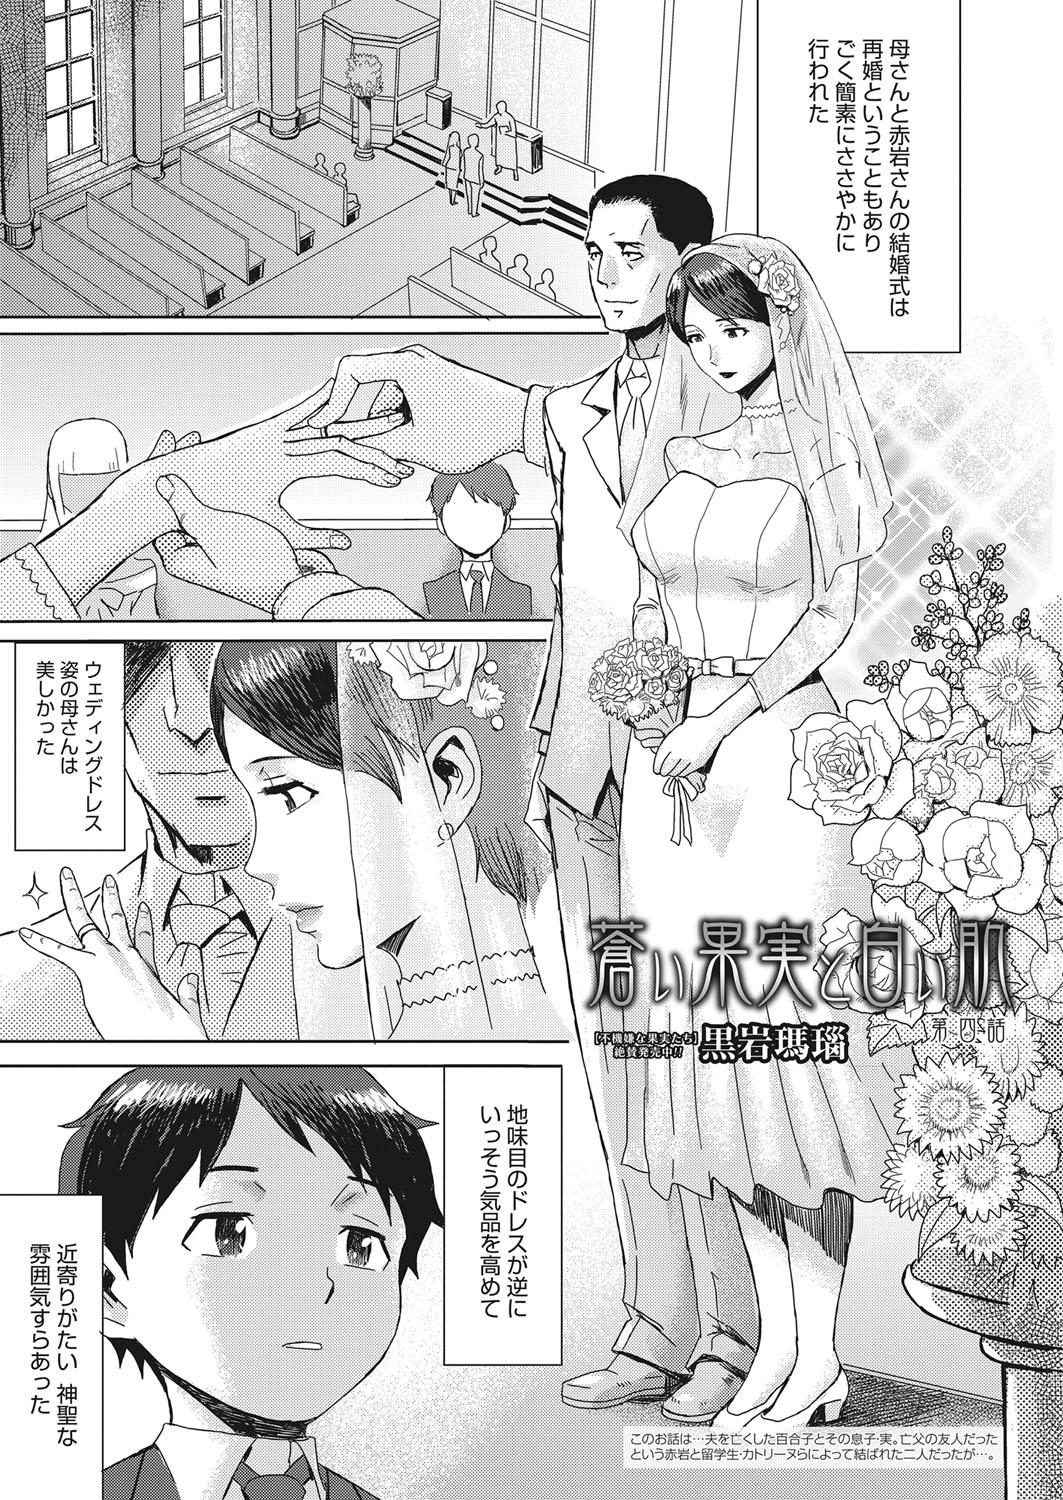 Jerking Web Manga Bangaichi Vol. 15 Bj - Page 4